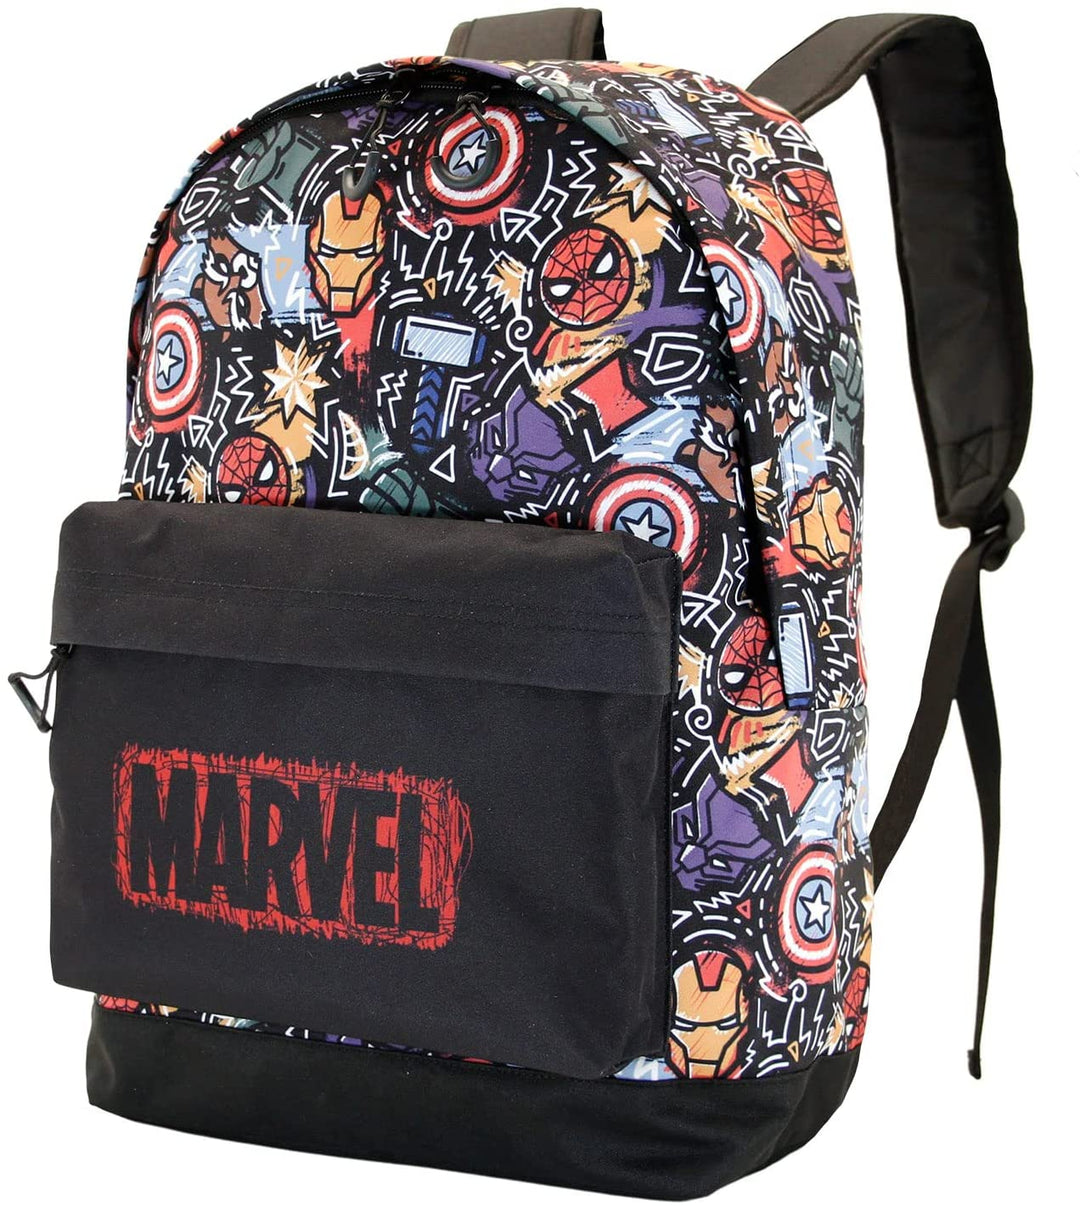 The Avengers Fun-Fan HS Backpack, Black